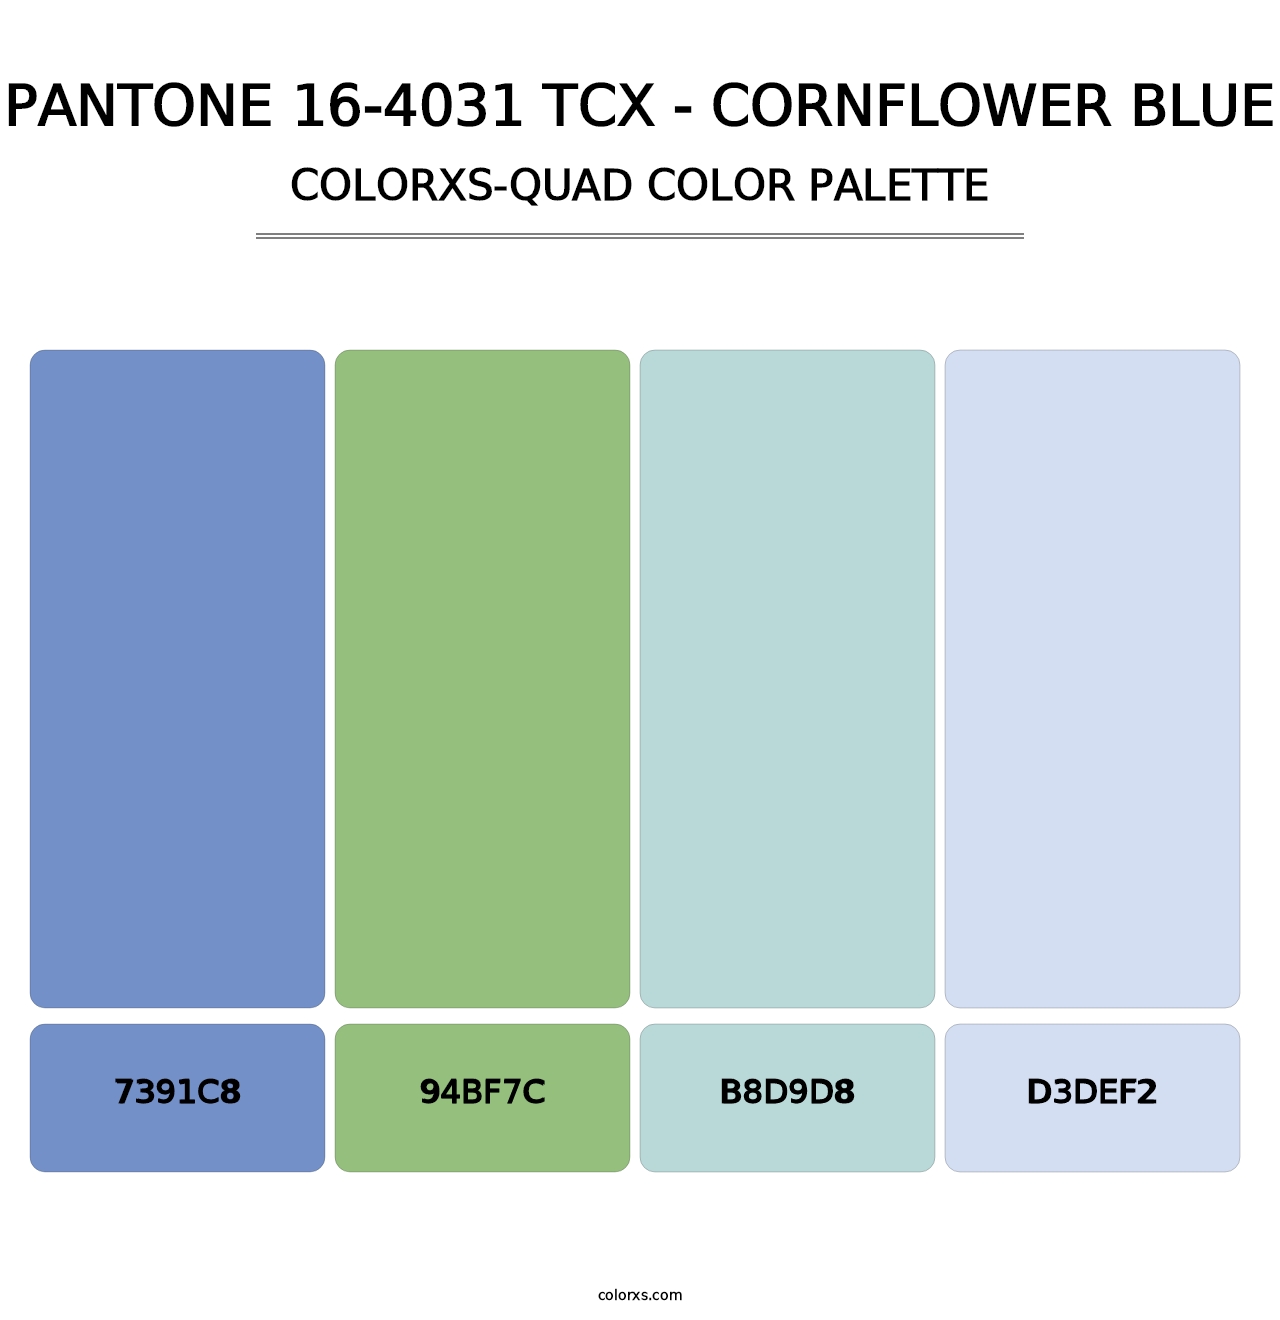 PANTONE 16-4031 TCX - Cornflower Blue - Colorxs Quad Palette